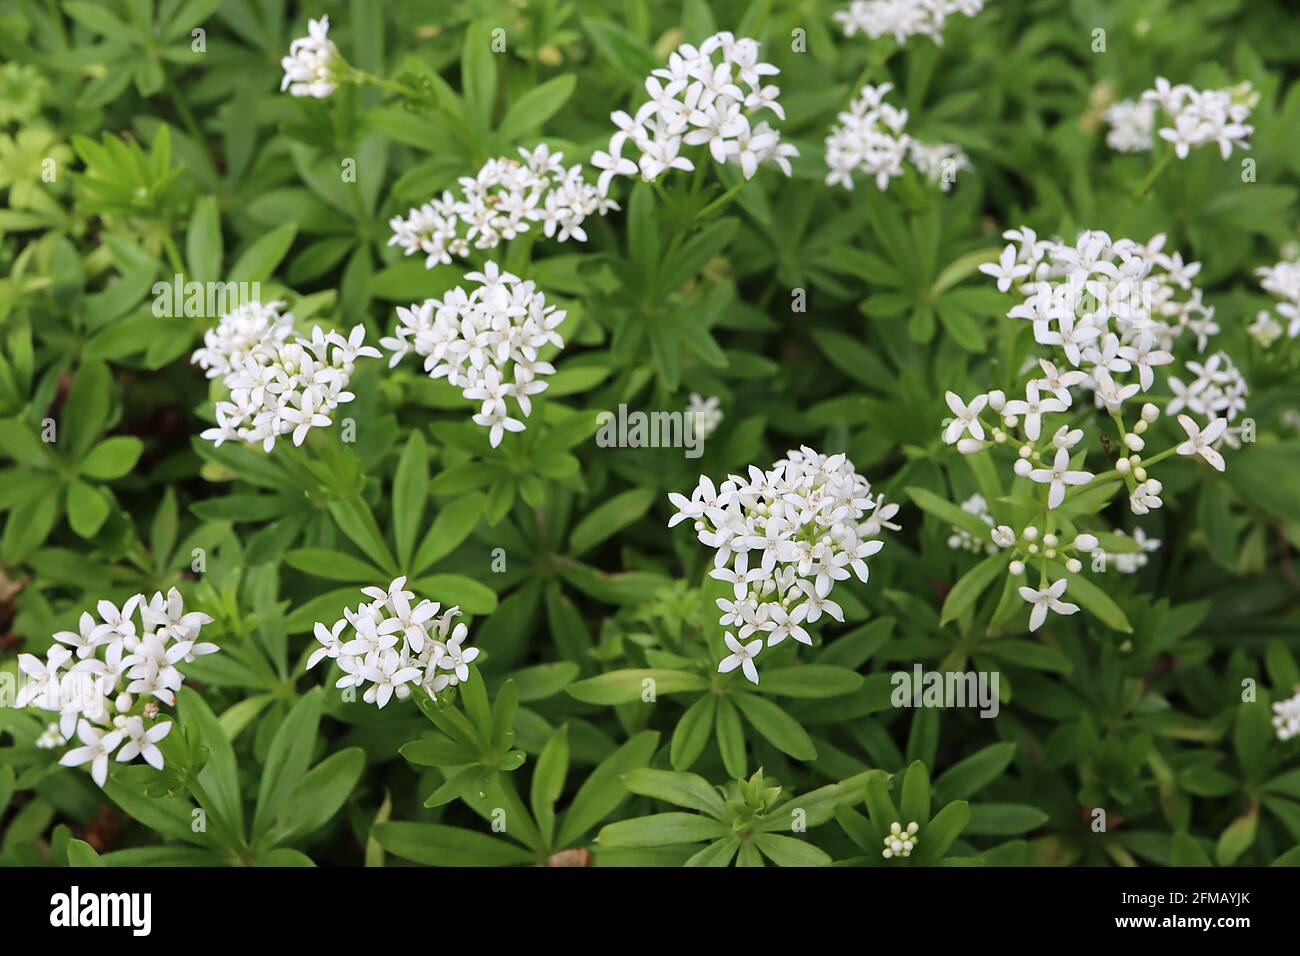 Galium odoratum Sweet woodruff – white star-shaped flowers and dark green lance-shaped leaves,  May, England, UK Stock Photo